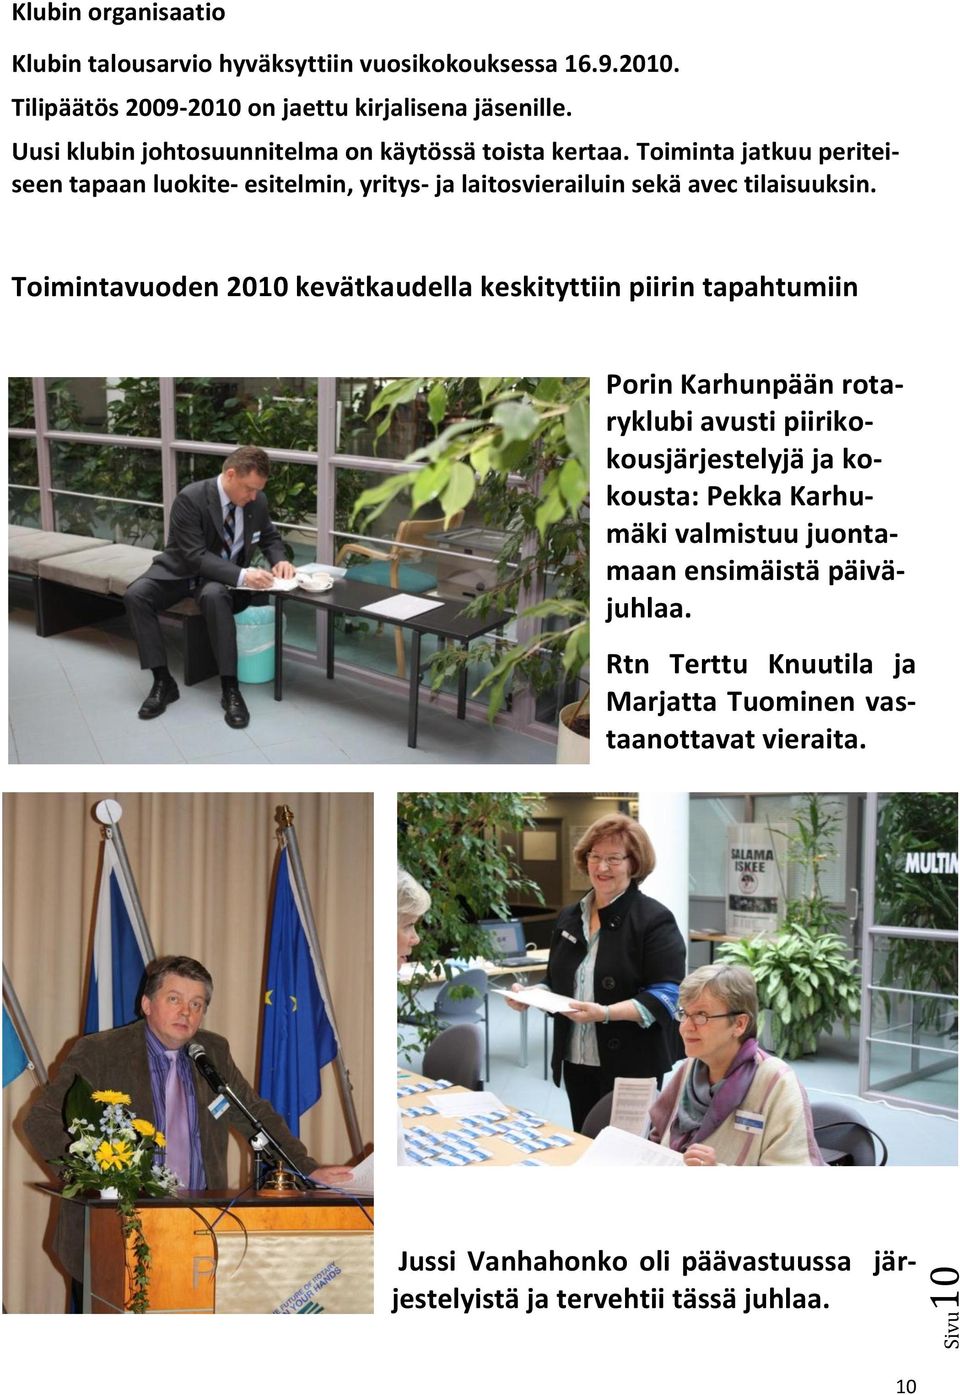 Toimintavuoden 2010 kevätkaudella keskityttiin piirin tapahtumiin Porin Karhunpään rotaryklubi avusti piirikokousjärjestelyjä ja kokousta: Pekka Karhumäki